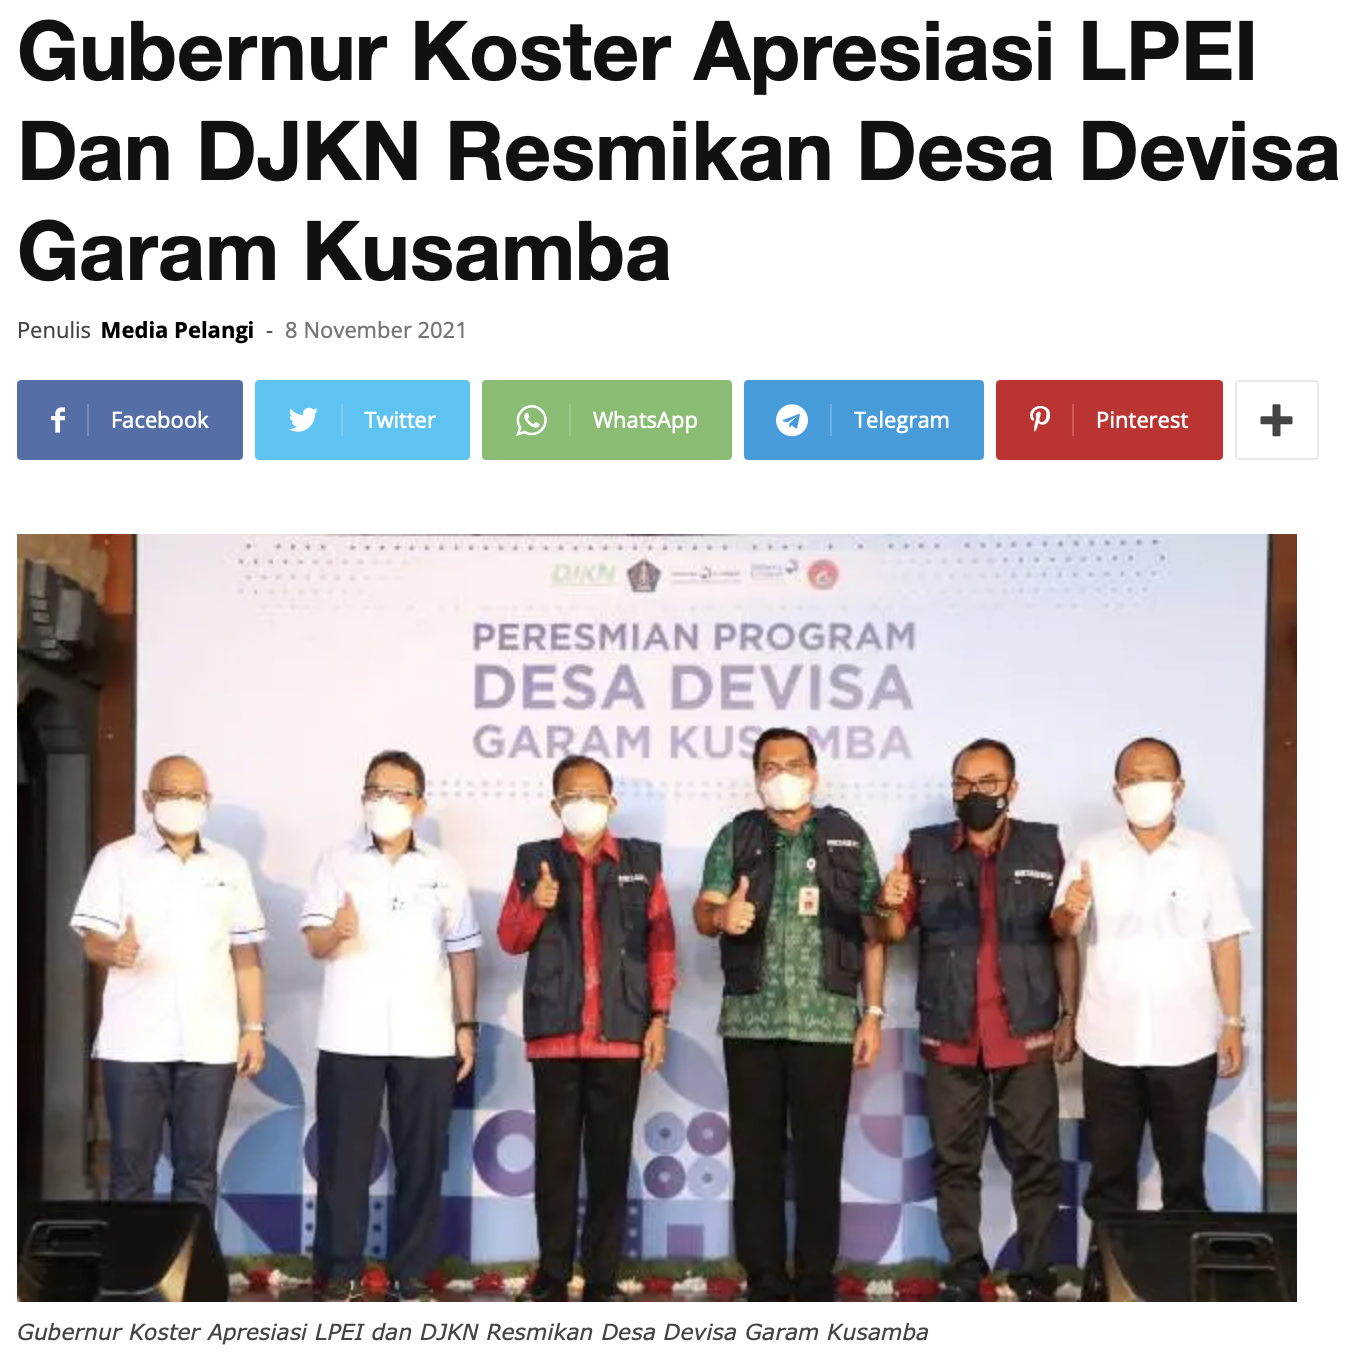 Gubernur Koster Apresiasi LPEI Dan DJKN Resmikan Desa Devisa Garam Kusamba